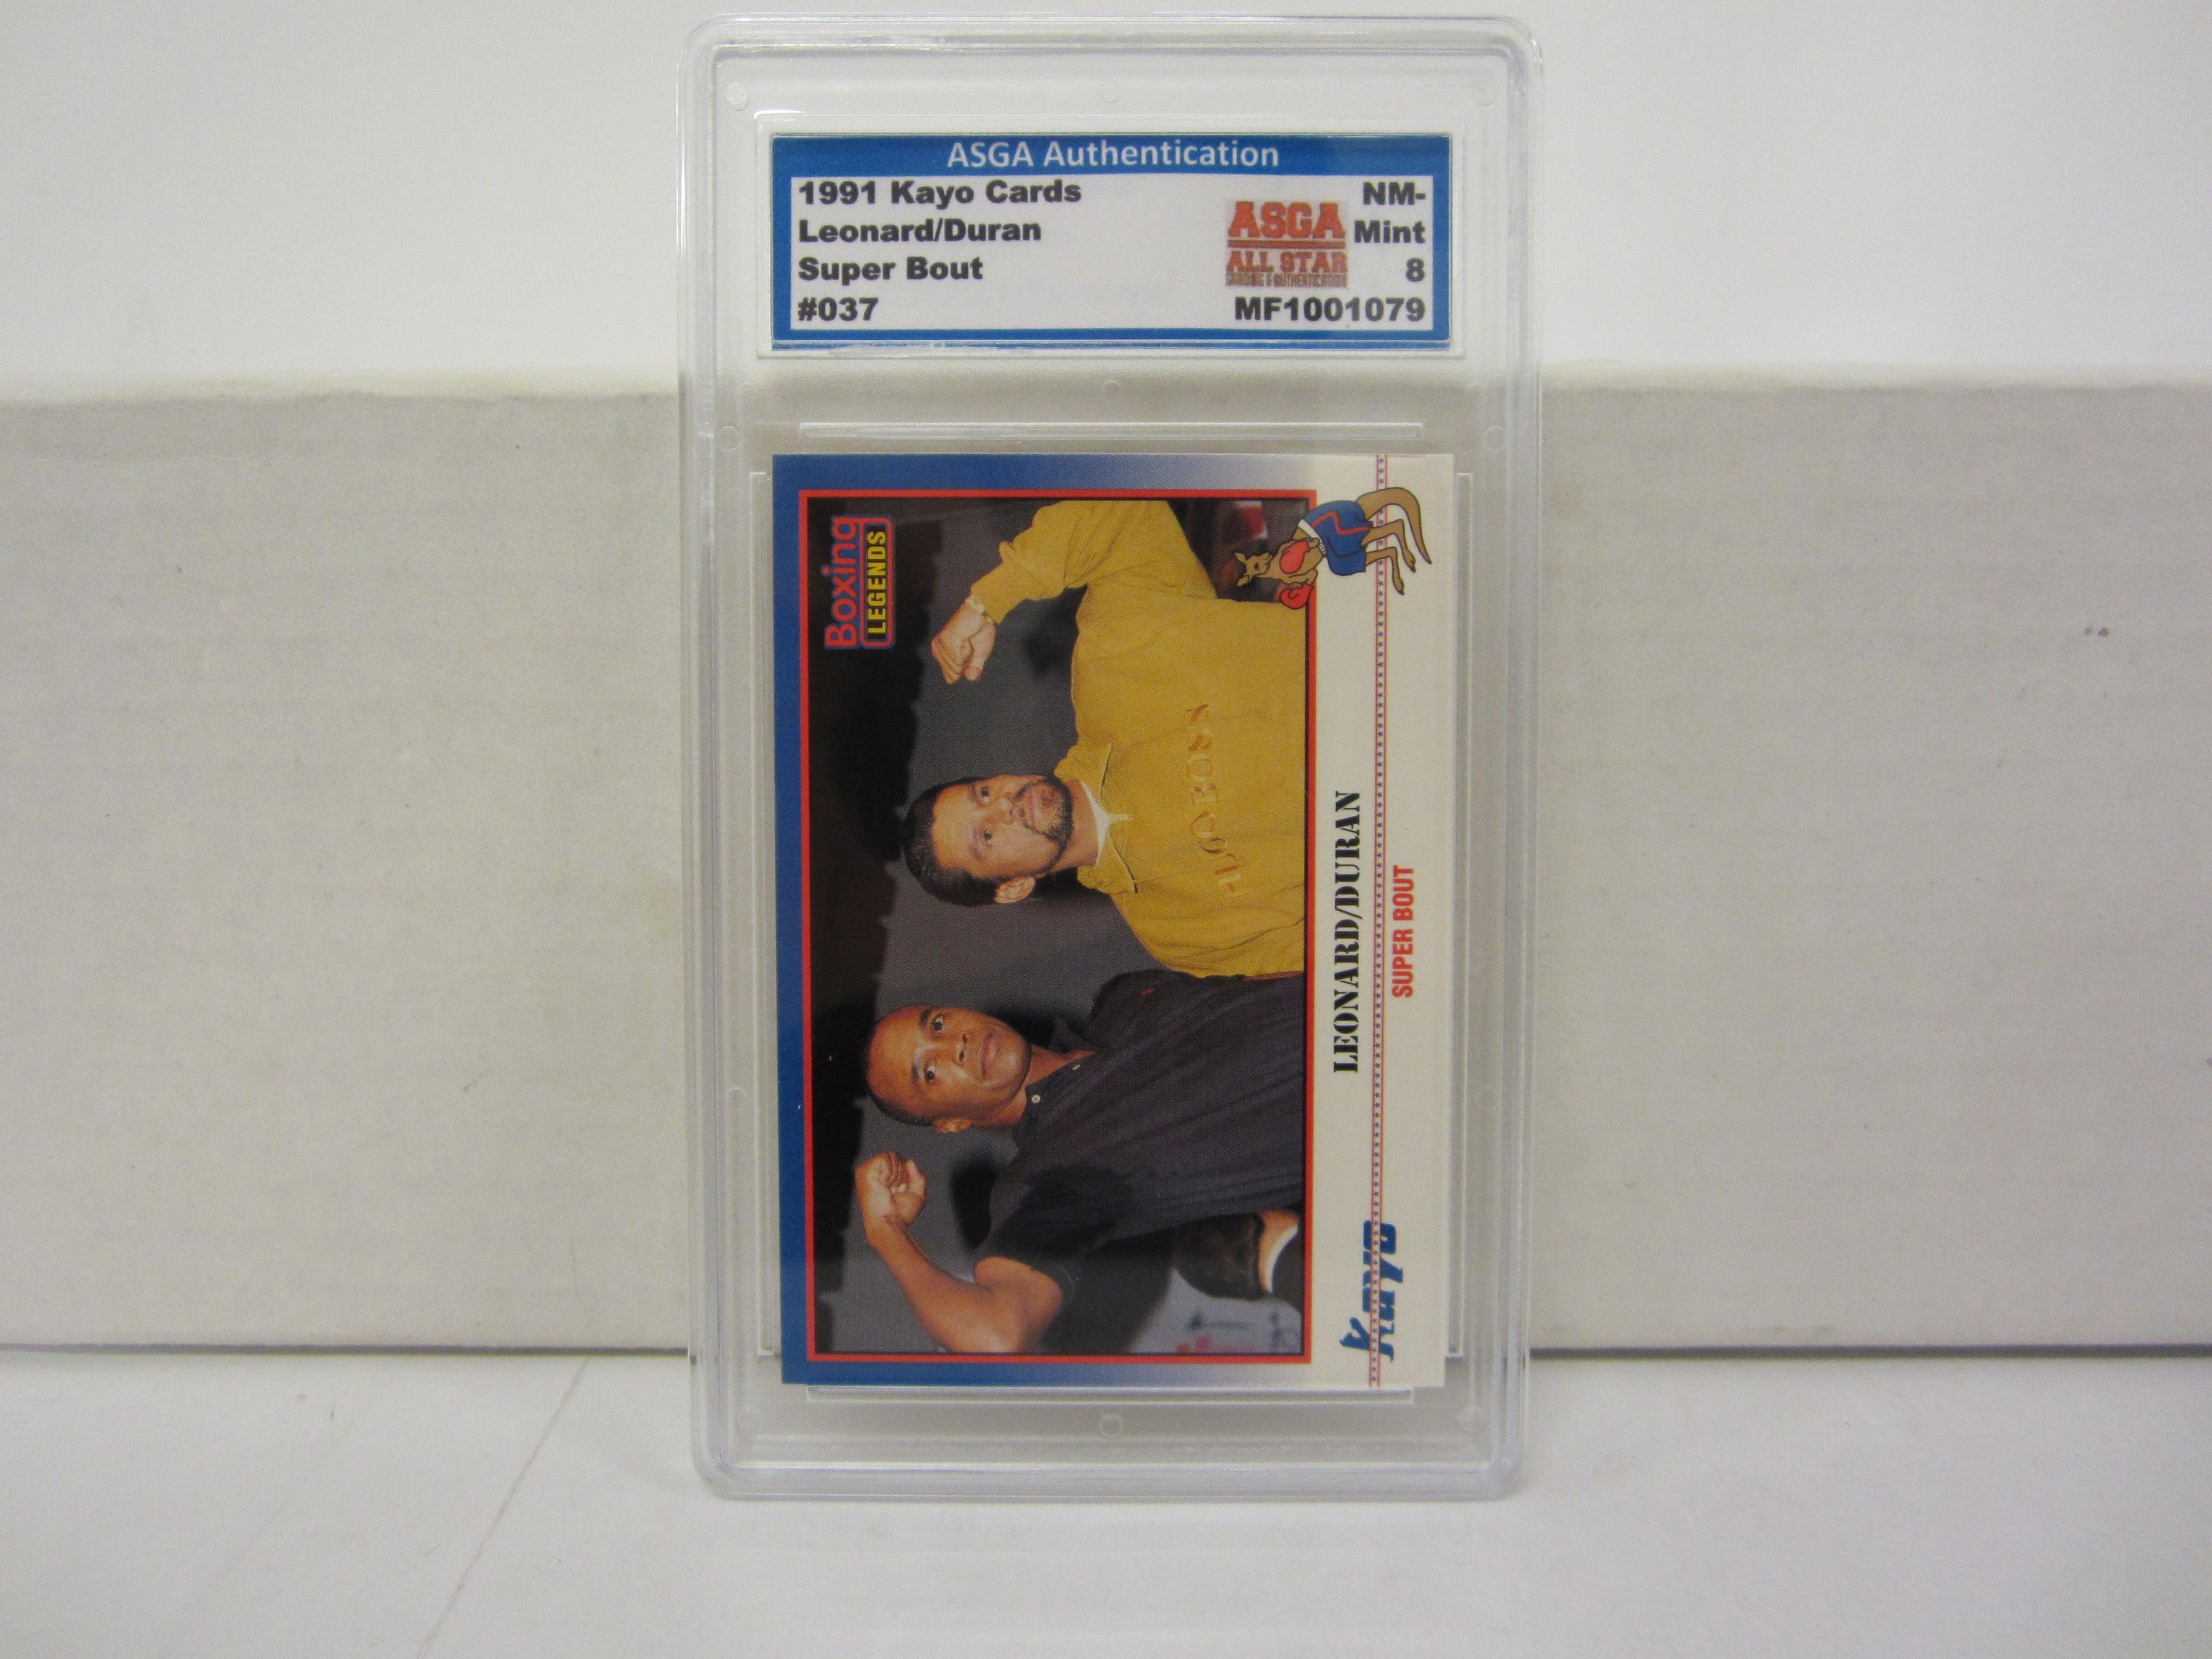 1991 Kayo Cards #37 ROBERTO DURAN & SUGAR RAY LEONARD Boxing Card Graded NM-Mint 8